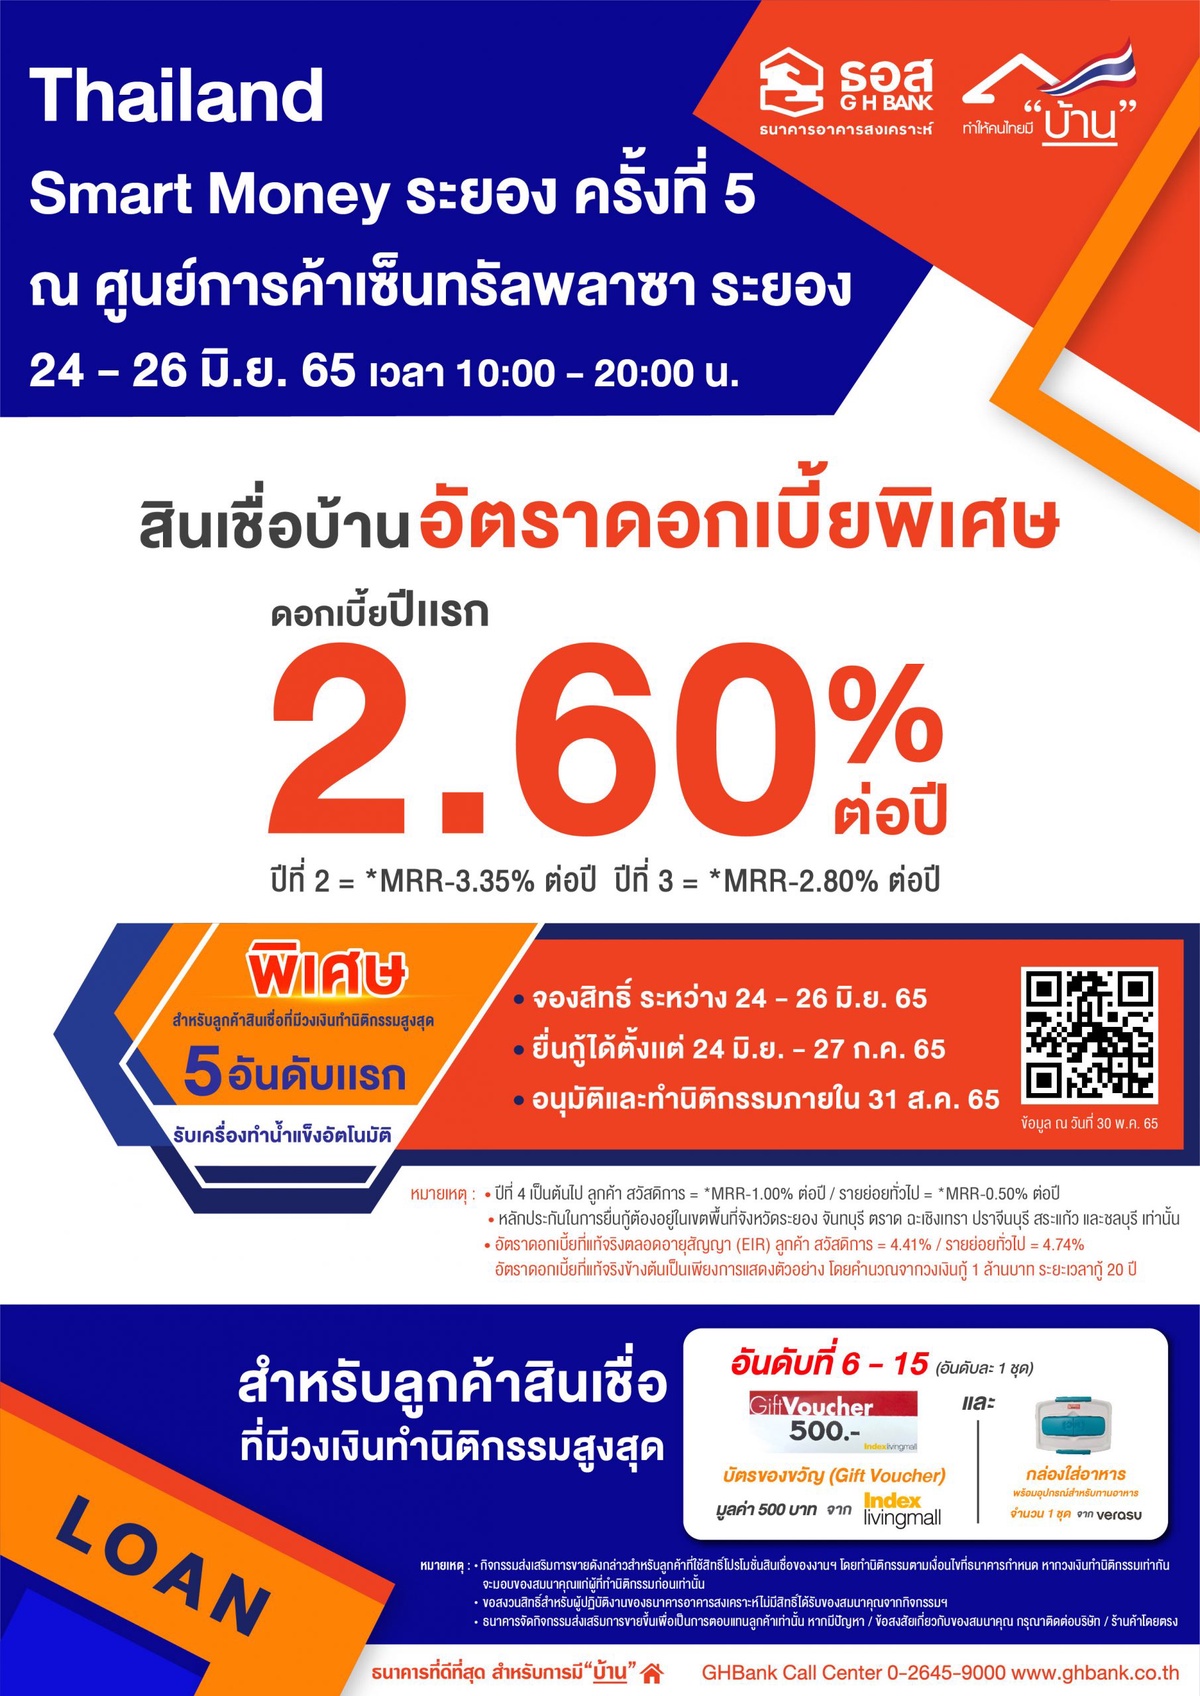 ธอส. ขนโปรโมชั่น สินเชื่อบ้านอัตราดอกเบี้ยคงที่ปีแรก 2.60% ต่อปี ร่วมงาน Thailand Smart Money ระยอง ครั้งที่ 5